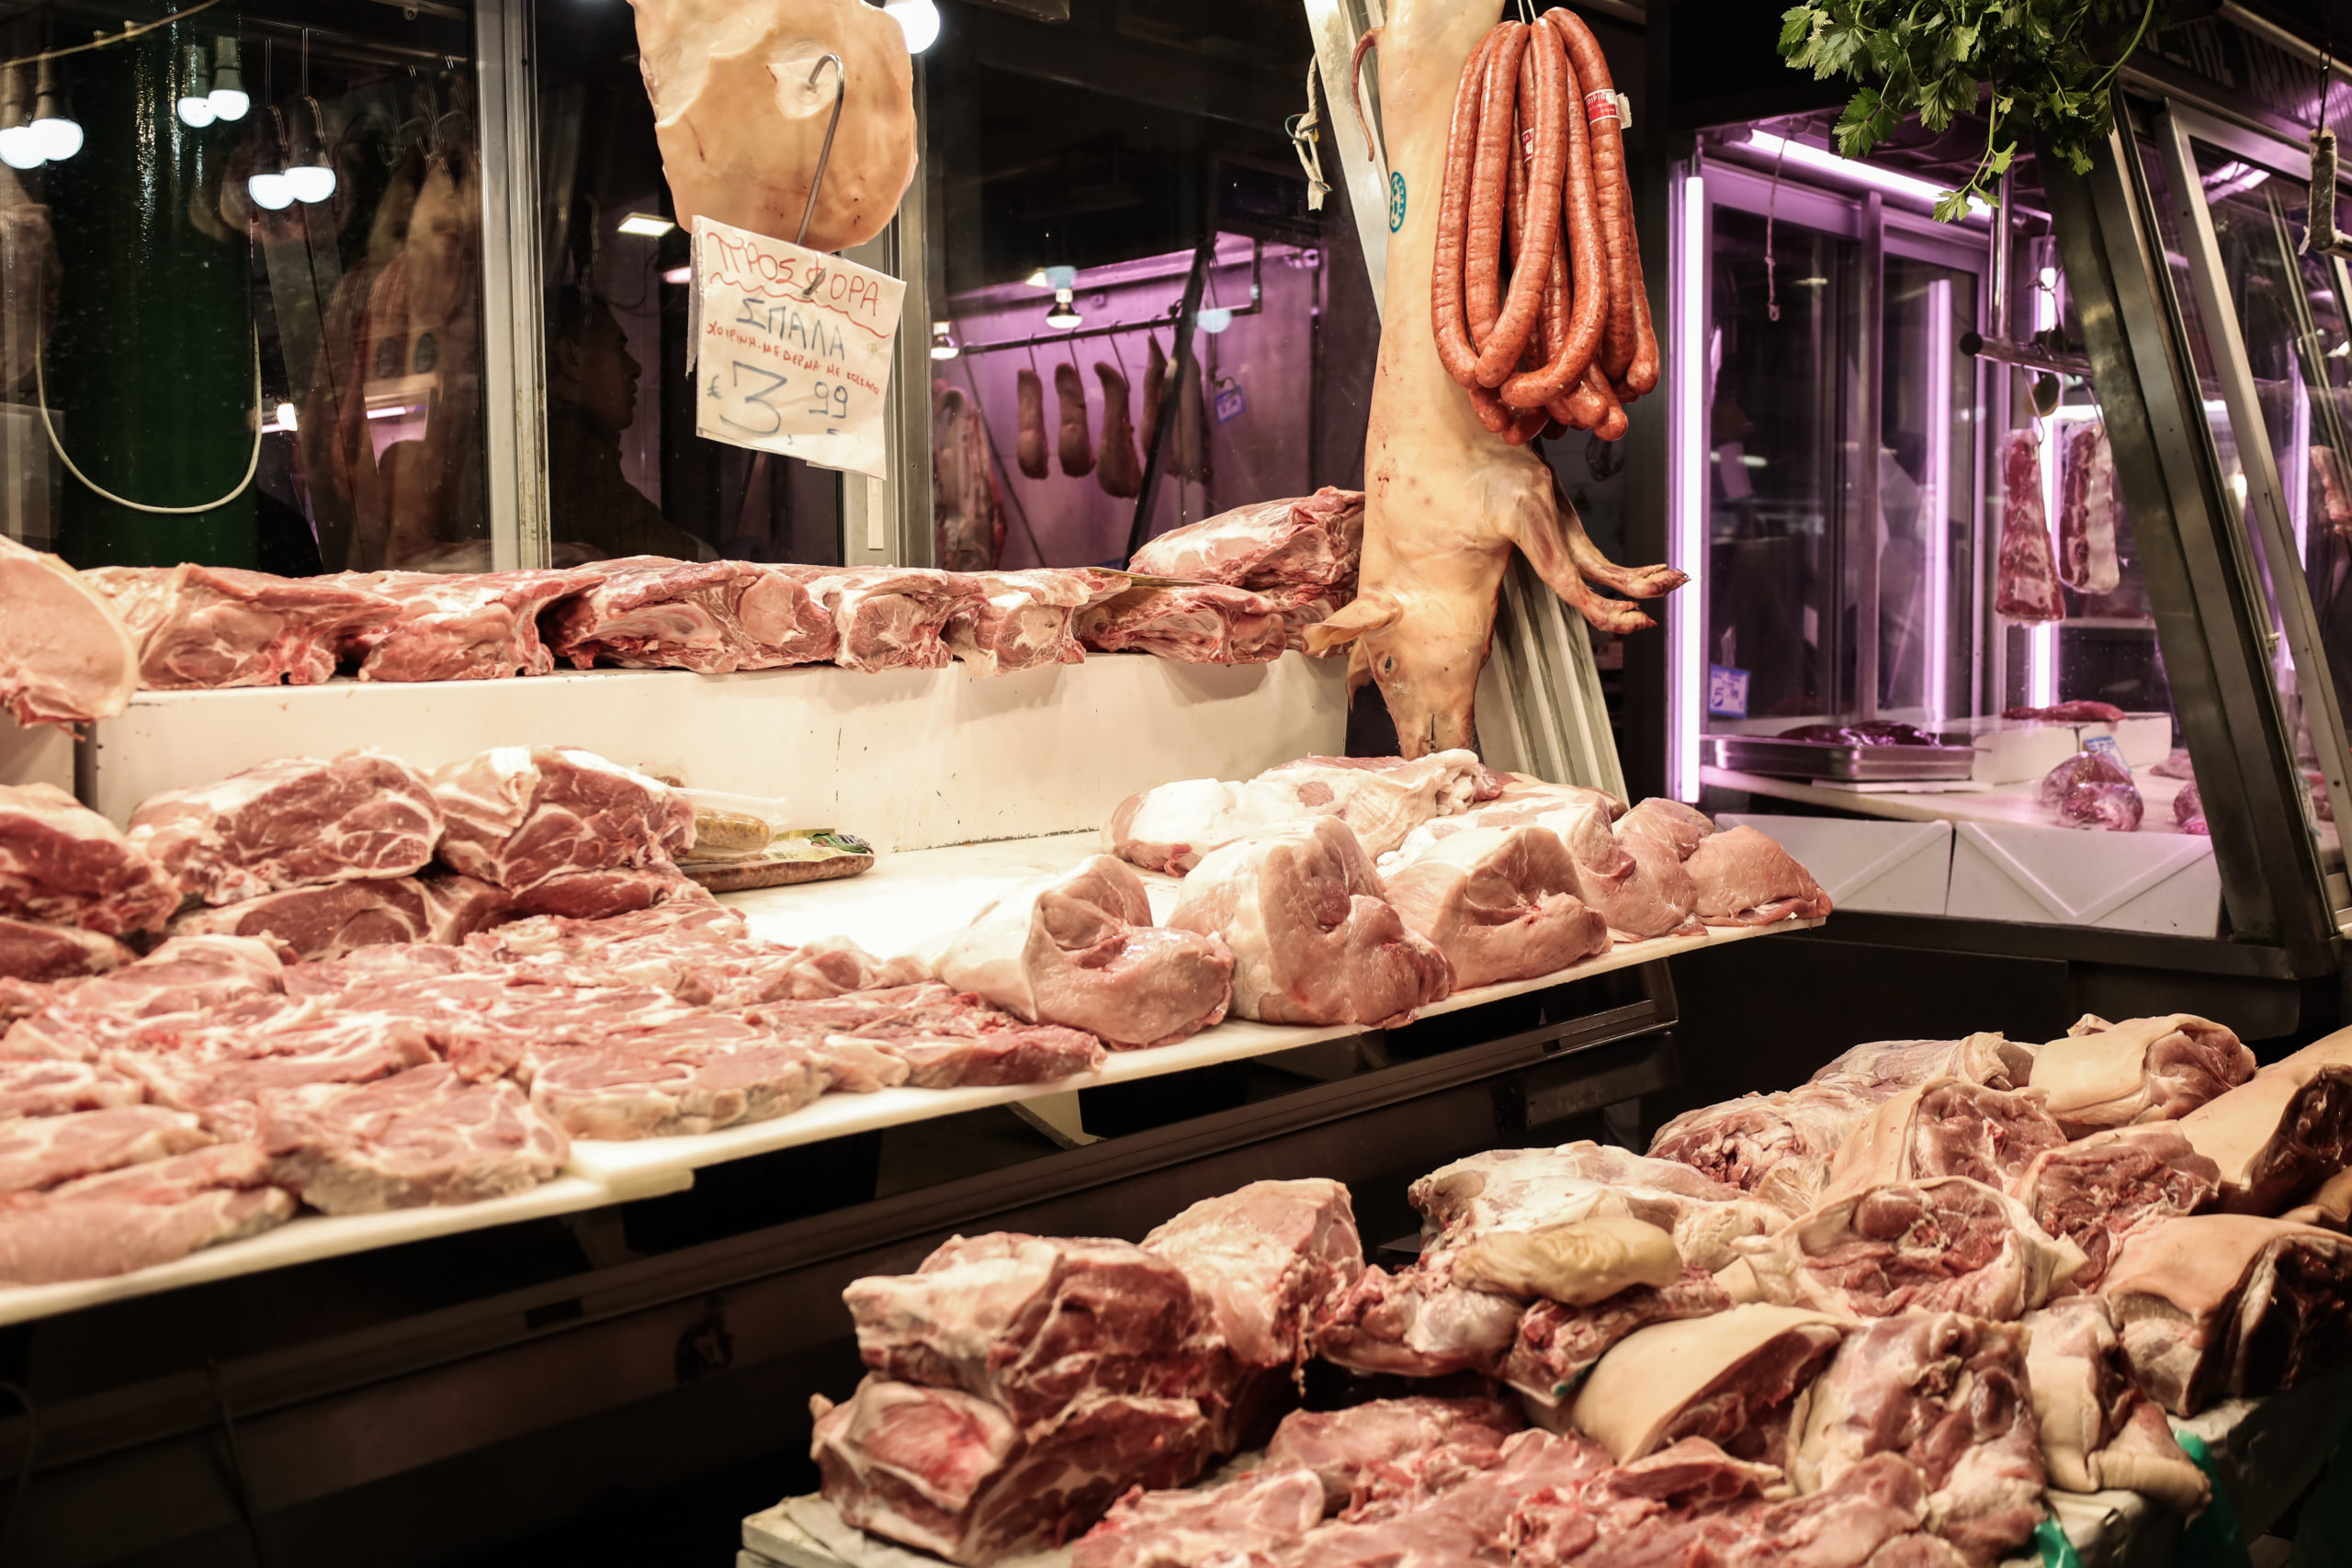 Περιφέρεια Αττικής: Δεσμεύτηκαν πάνω από πέντε τόνοι κρέατος την εορταστική περίοδο